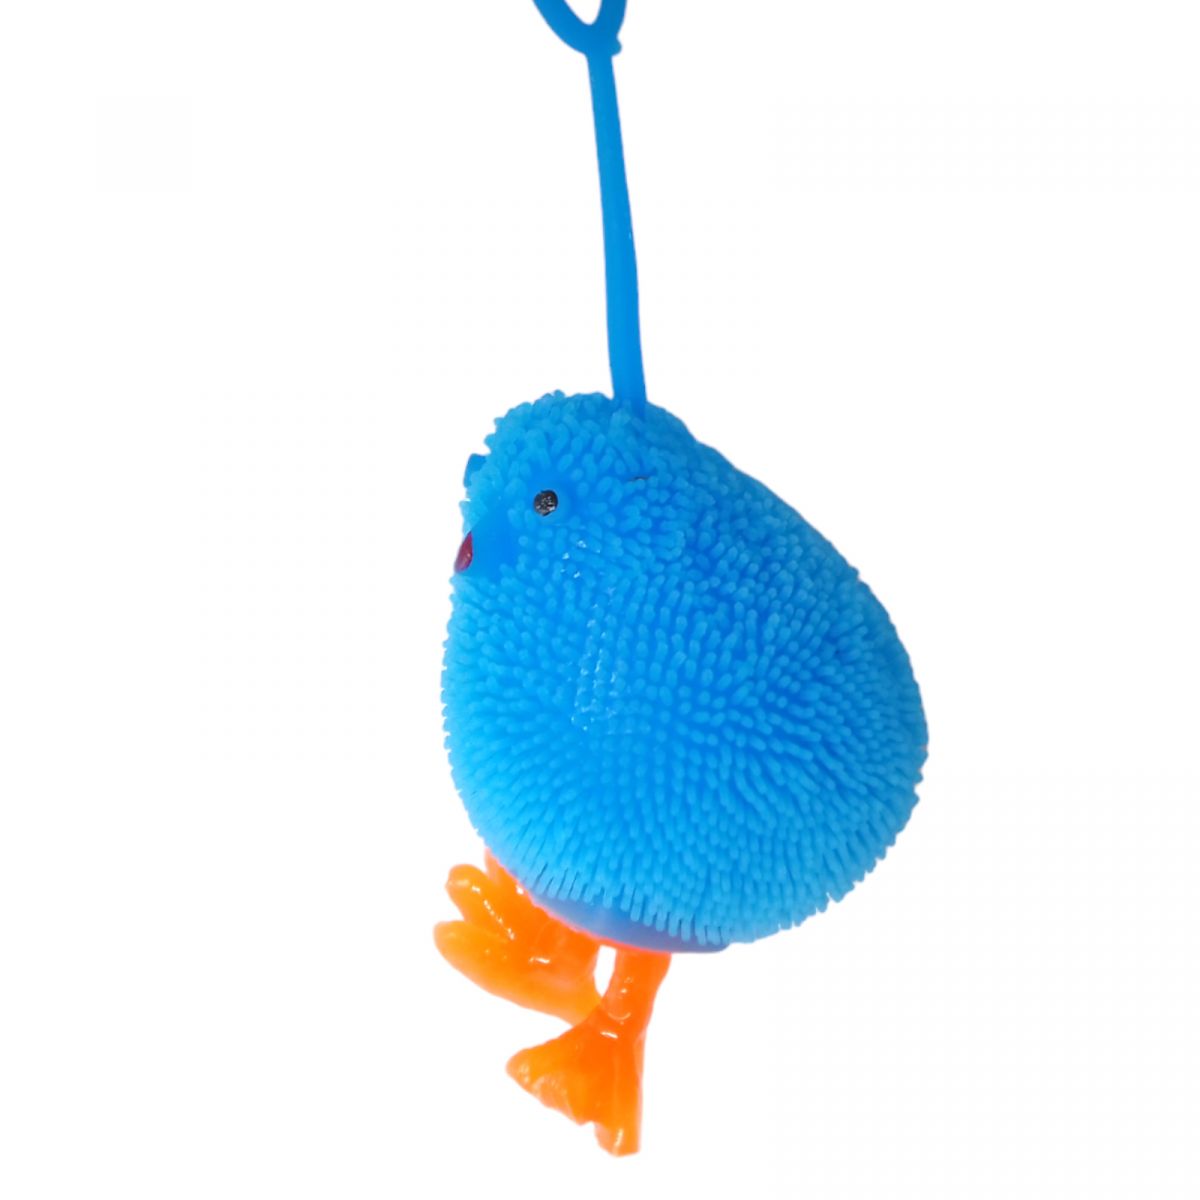 Светяшка-антистресс "Цыпленок", 8 см, голубой